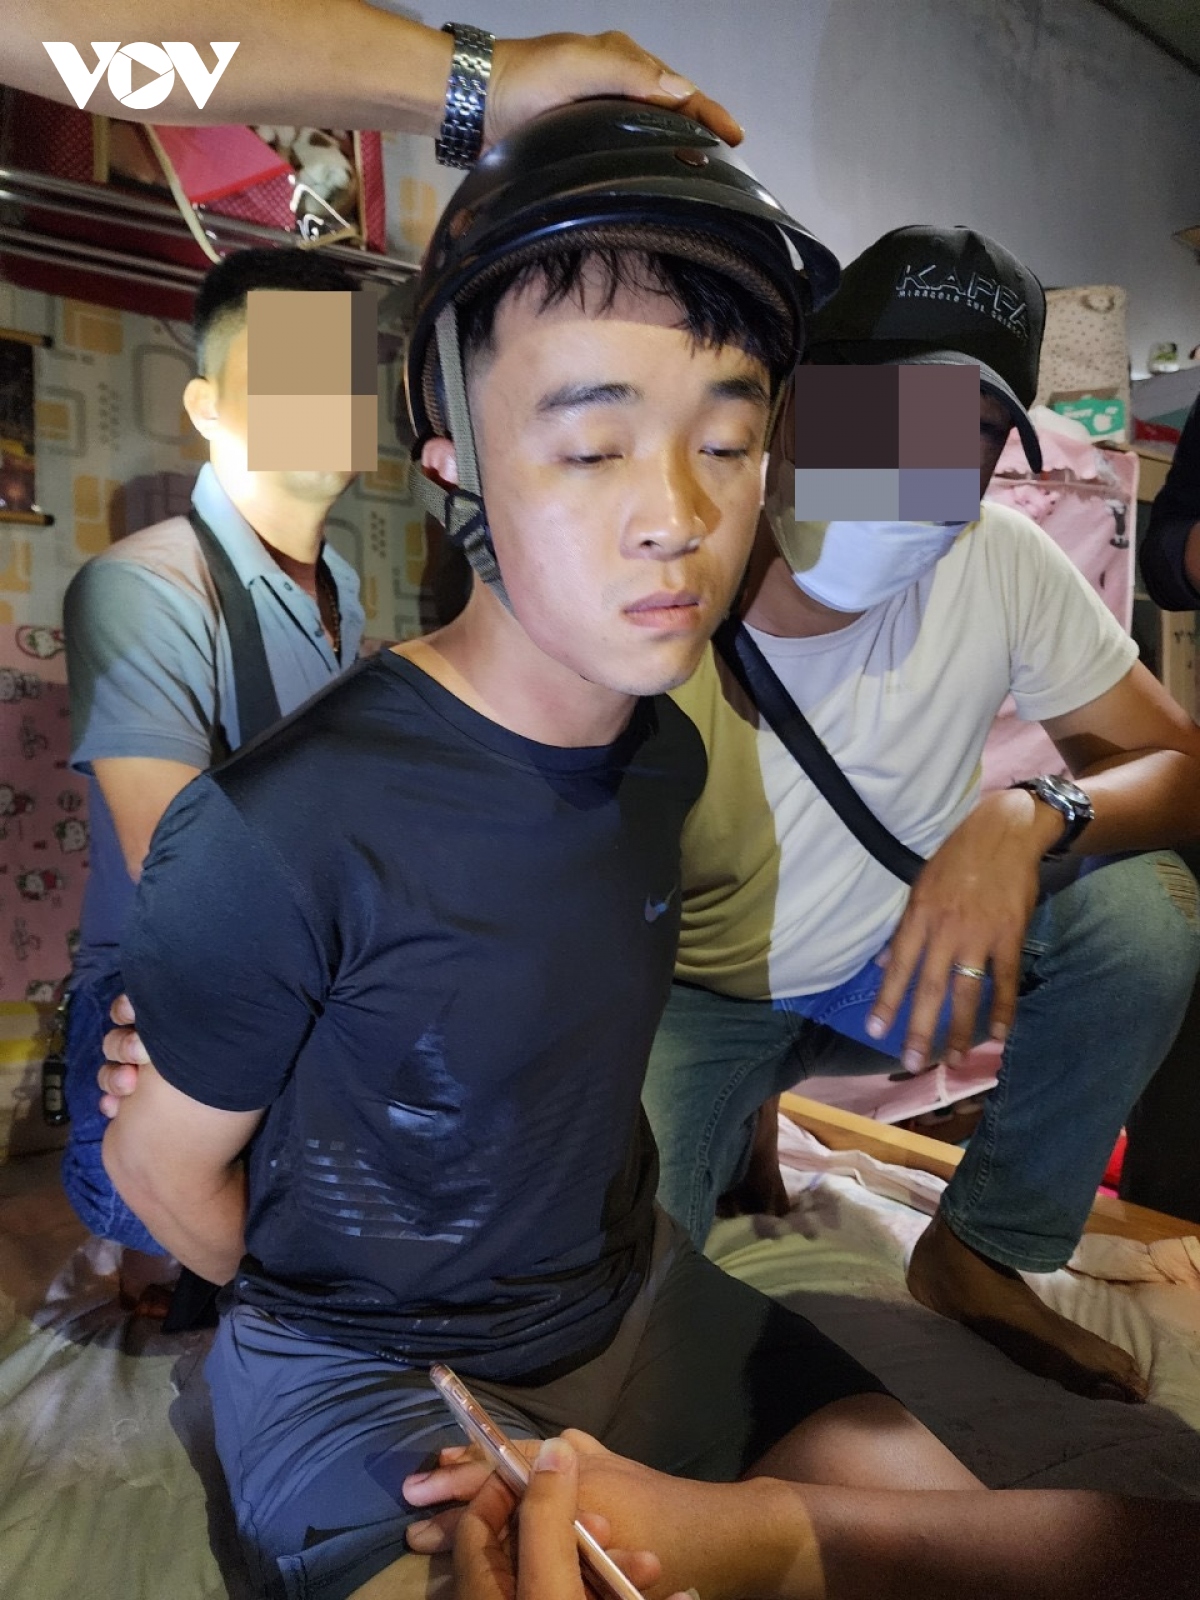 Thưởng “nóng” Ban chuyên án bắt giữ nghi phạm vụ cướp ngân hàng tại Đà Nẵng